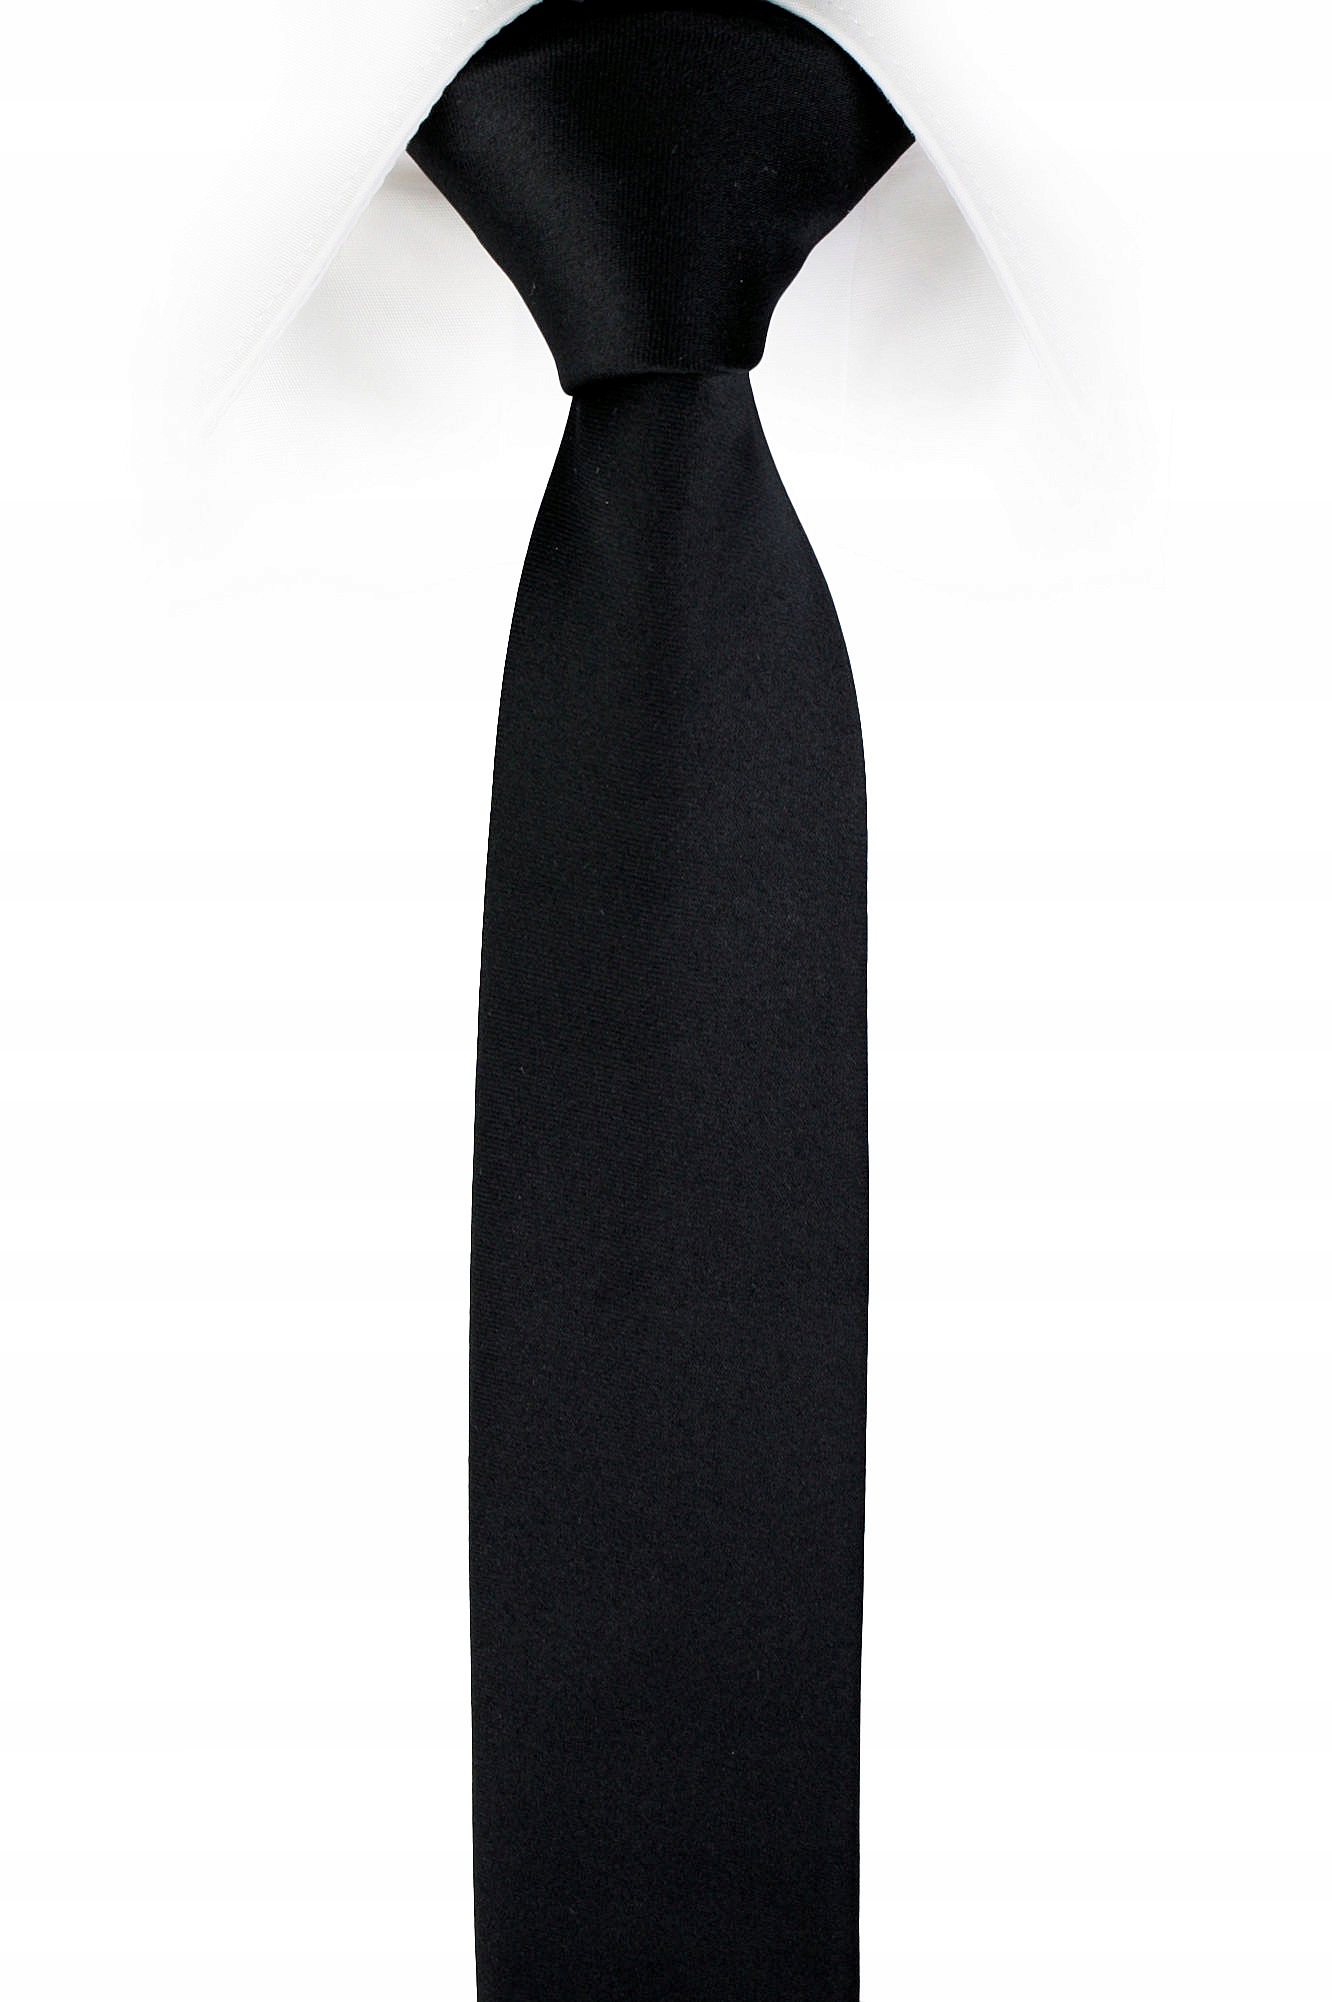 Узкий галстук мужской. Узкий черный галстук. Галстук селедка черный.